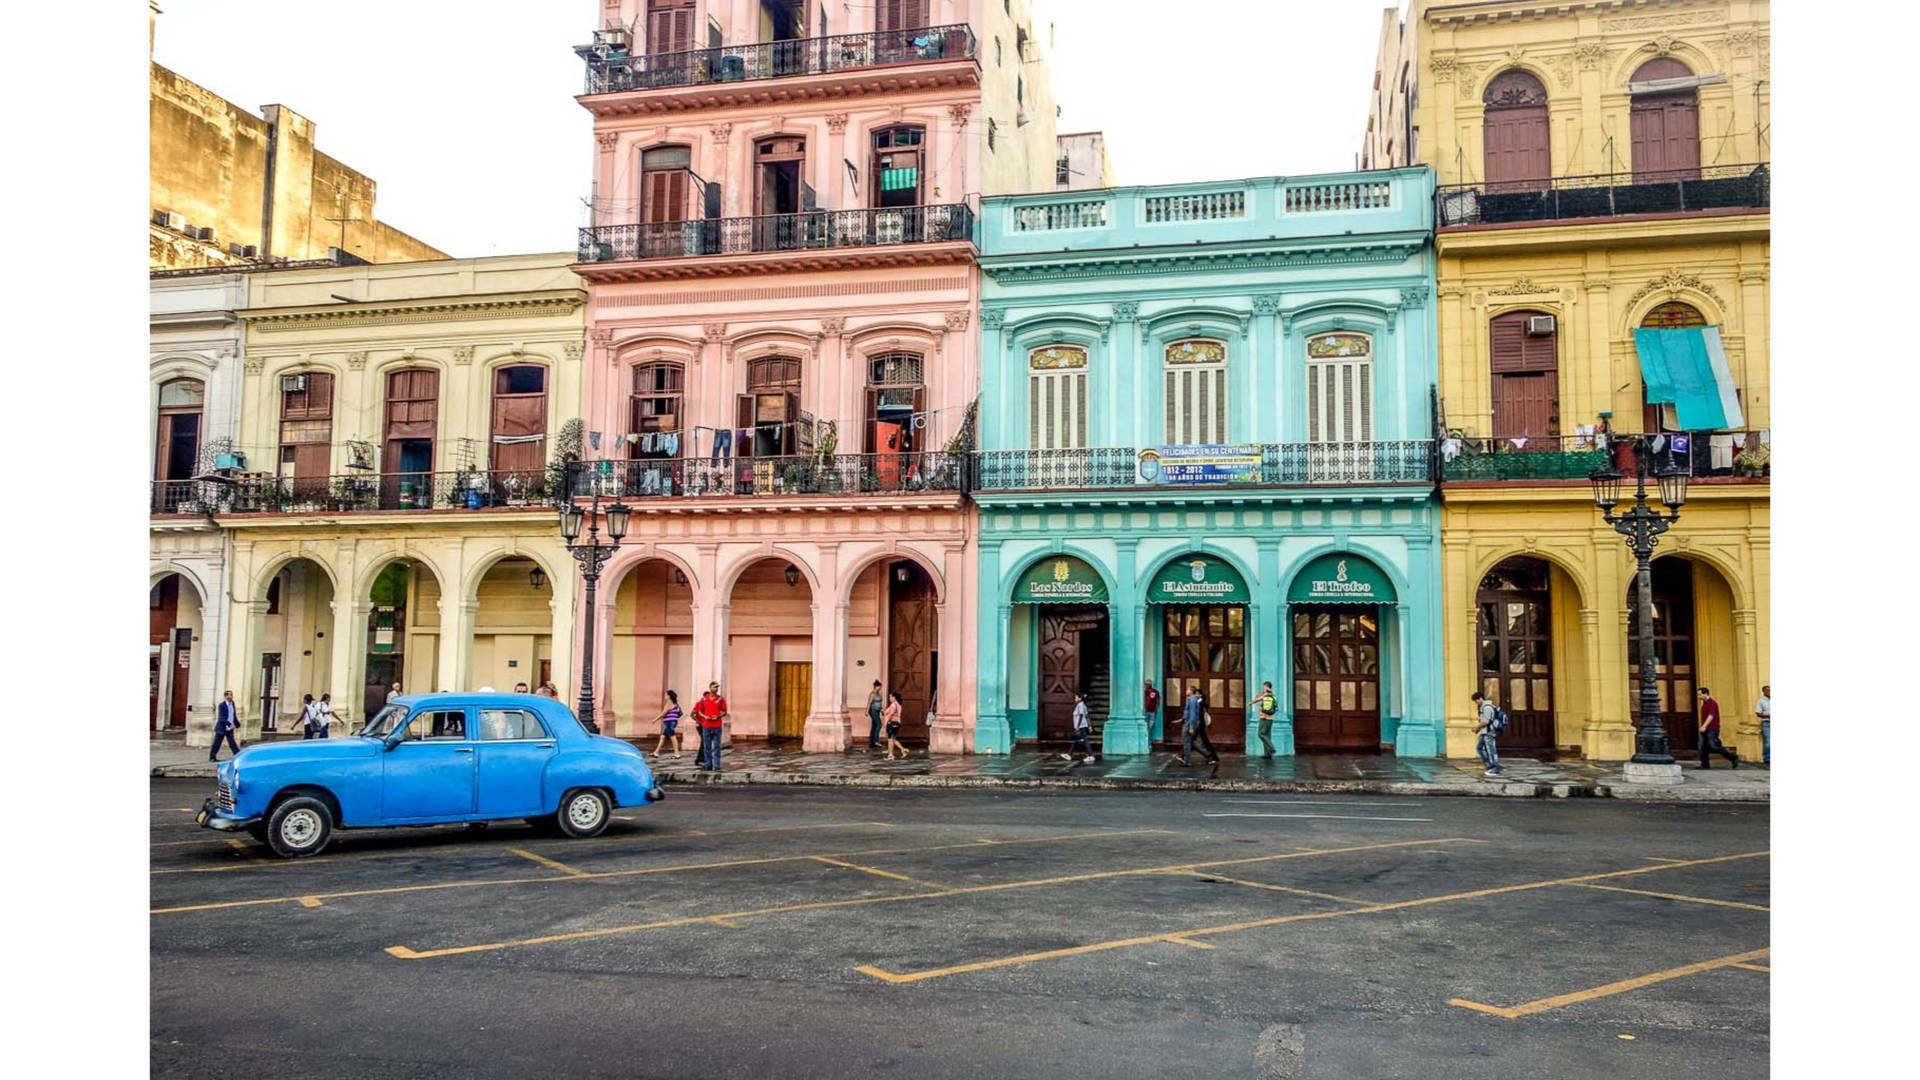 Färggladabyggnader I Kuba. Wallpaper